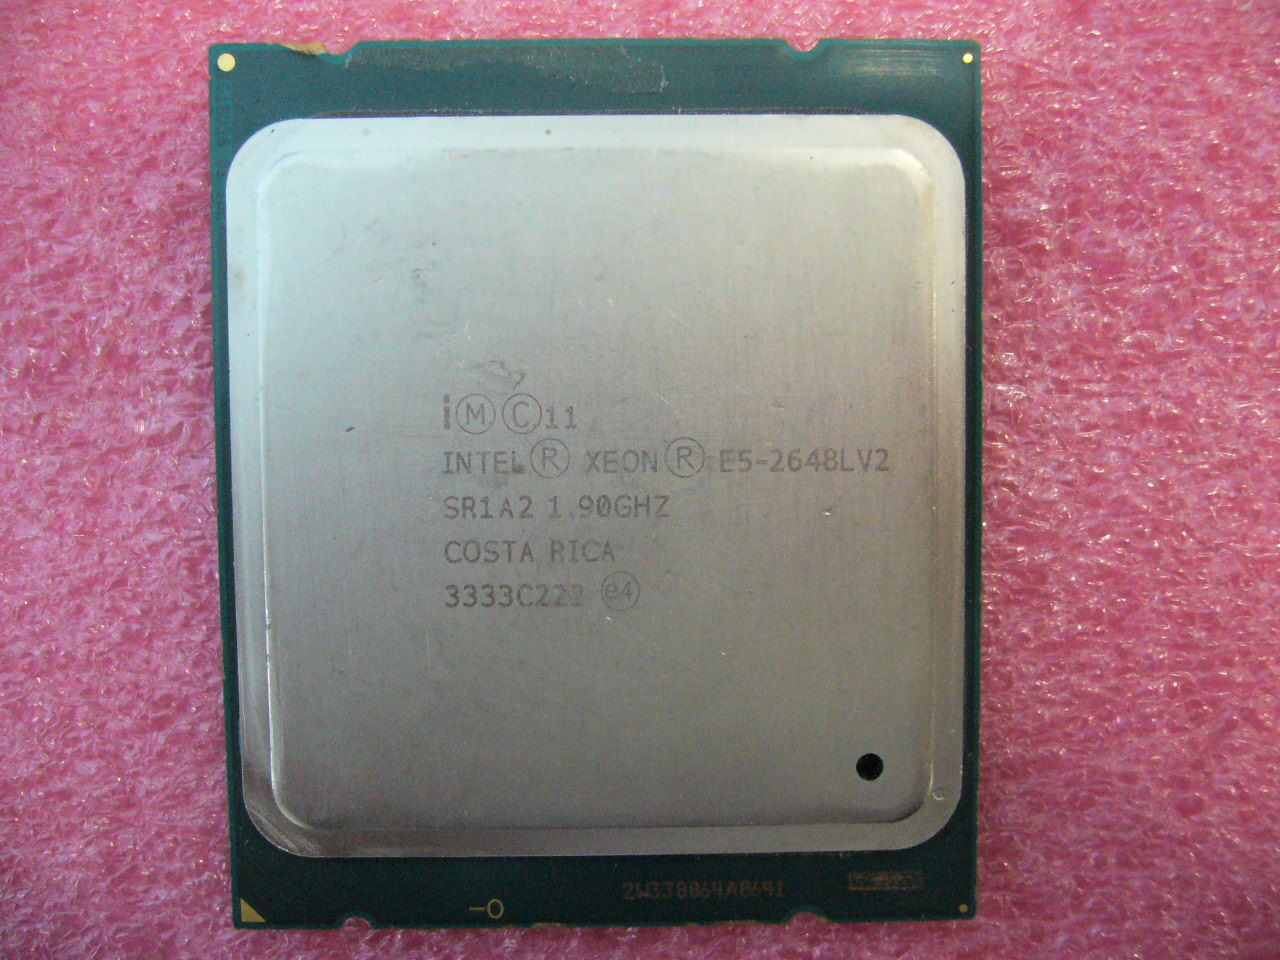 QTY 1x Intel CPU E5-2648LV2 CPU 10-Cores 1.9Ghz 25MB LGA2011 TDP 70W SR1A2